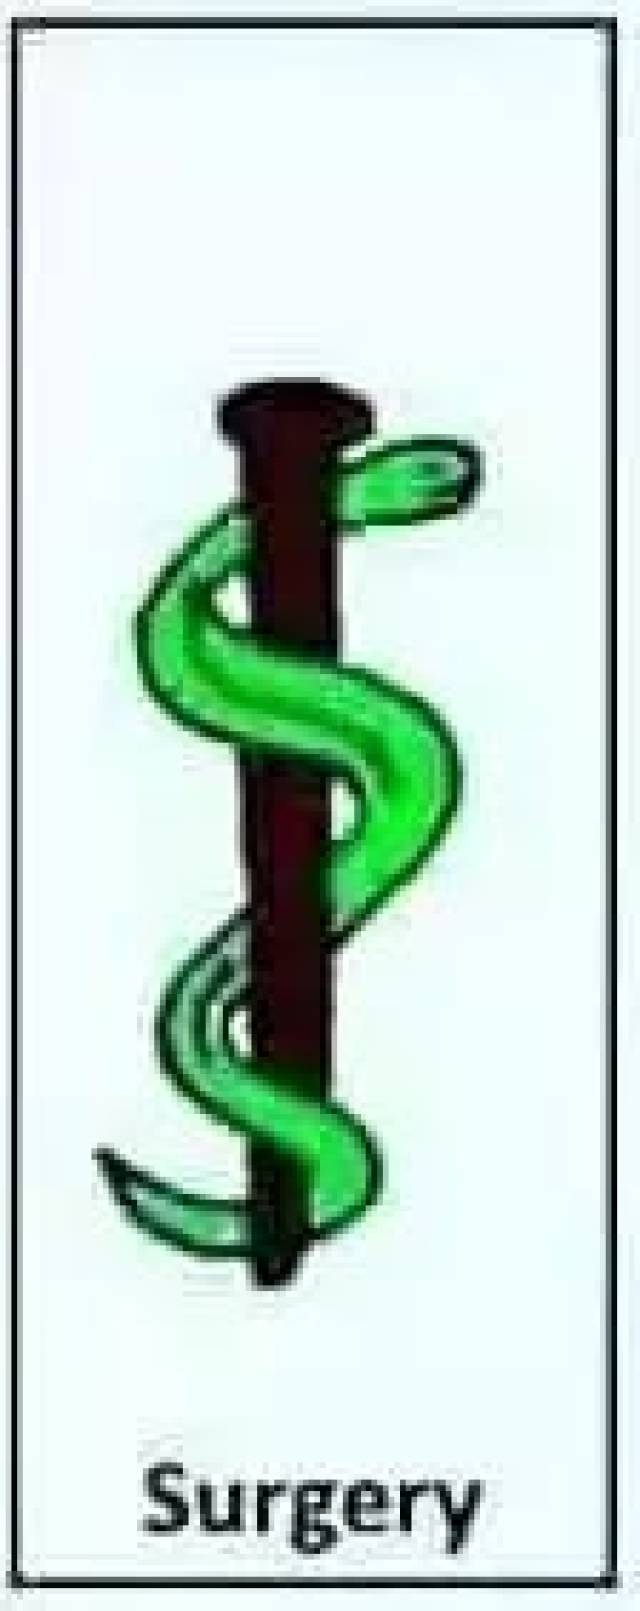 各科室蛇杖logo,这条蛇要被玩坏了